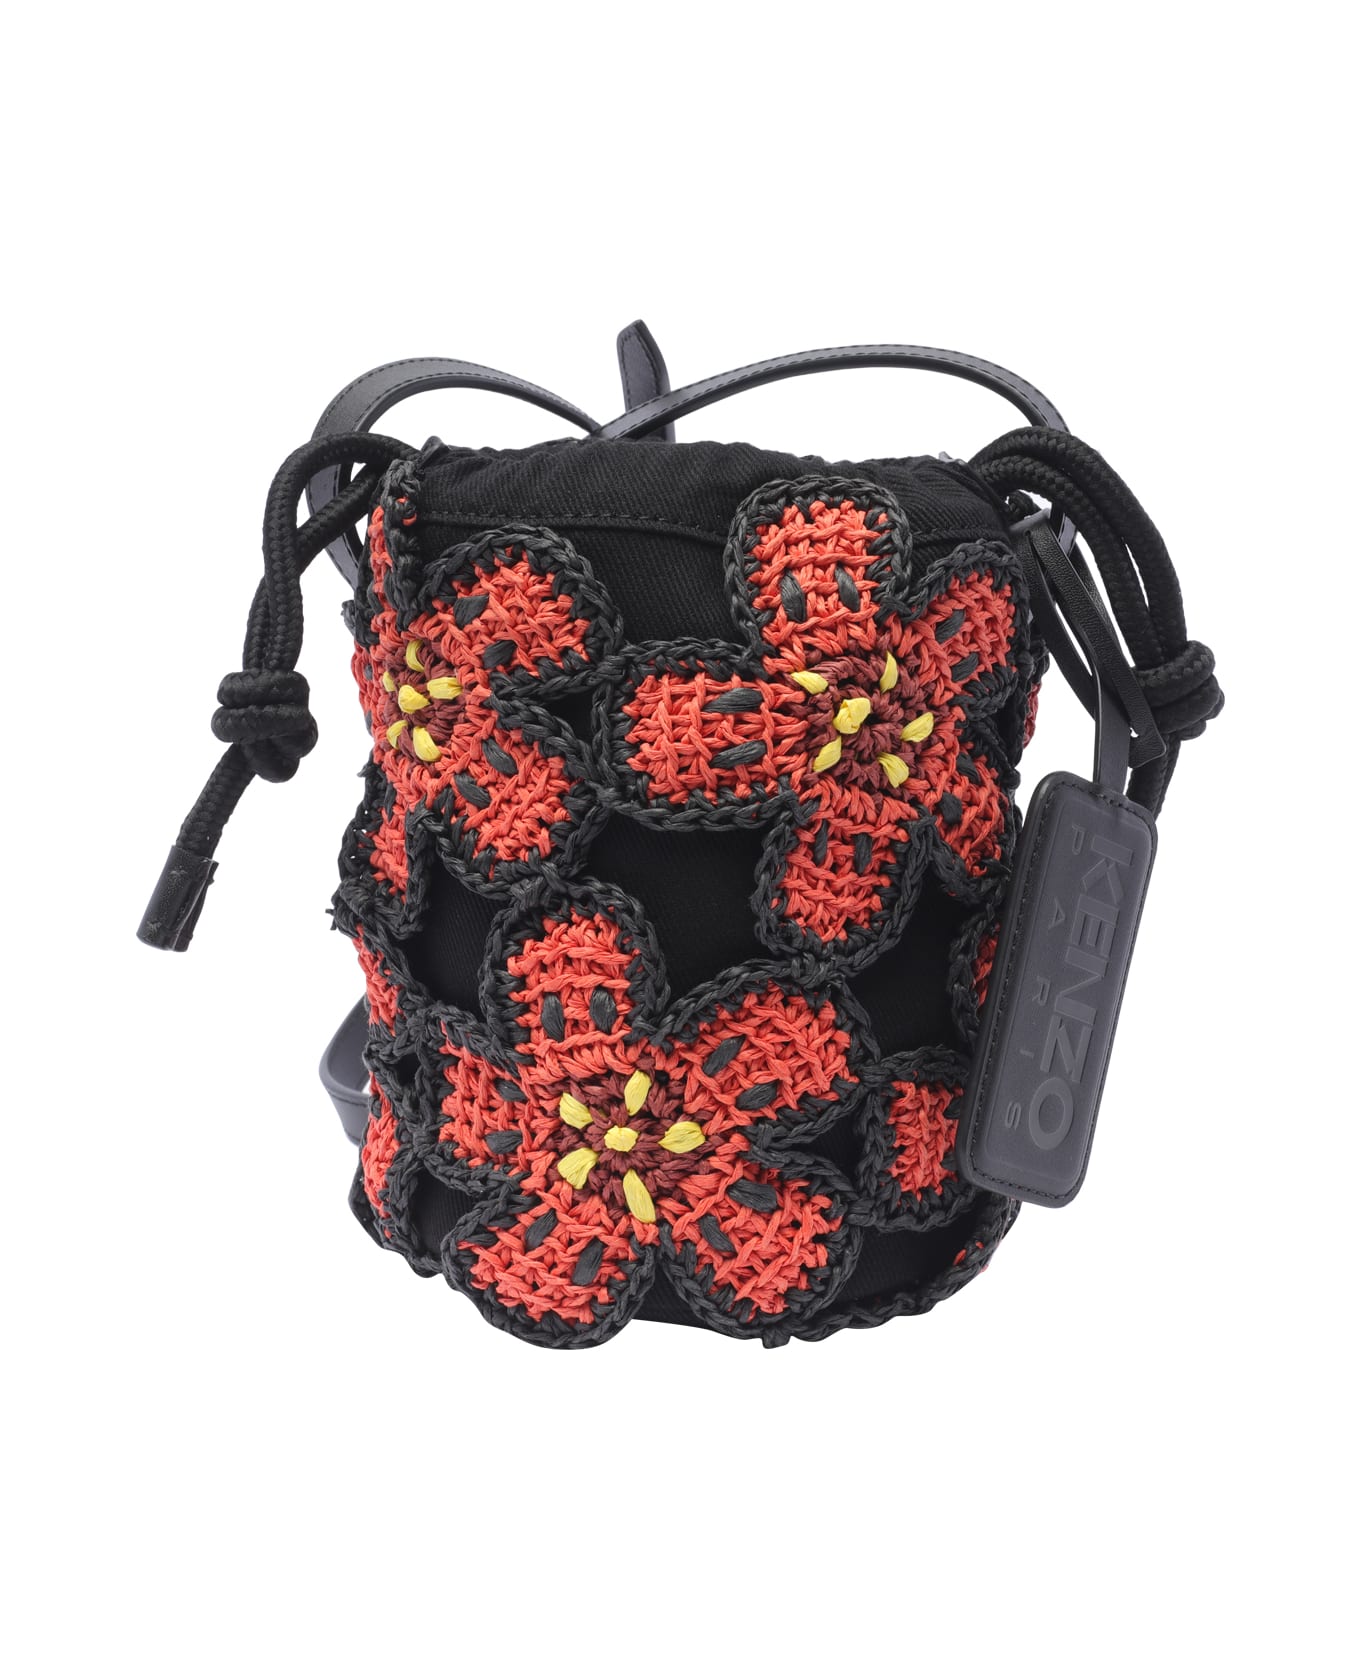 Kenzo Floral Patterned Bucket Bag - Black